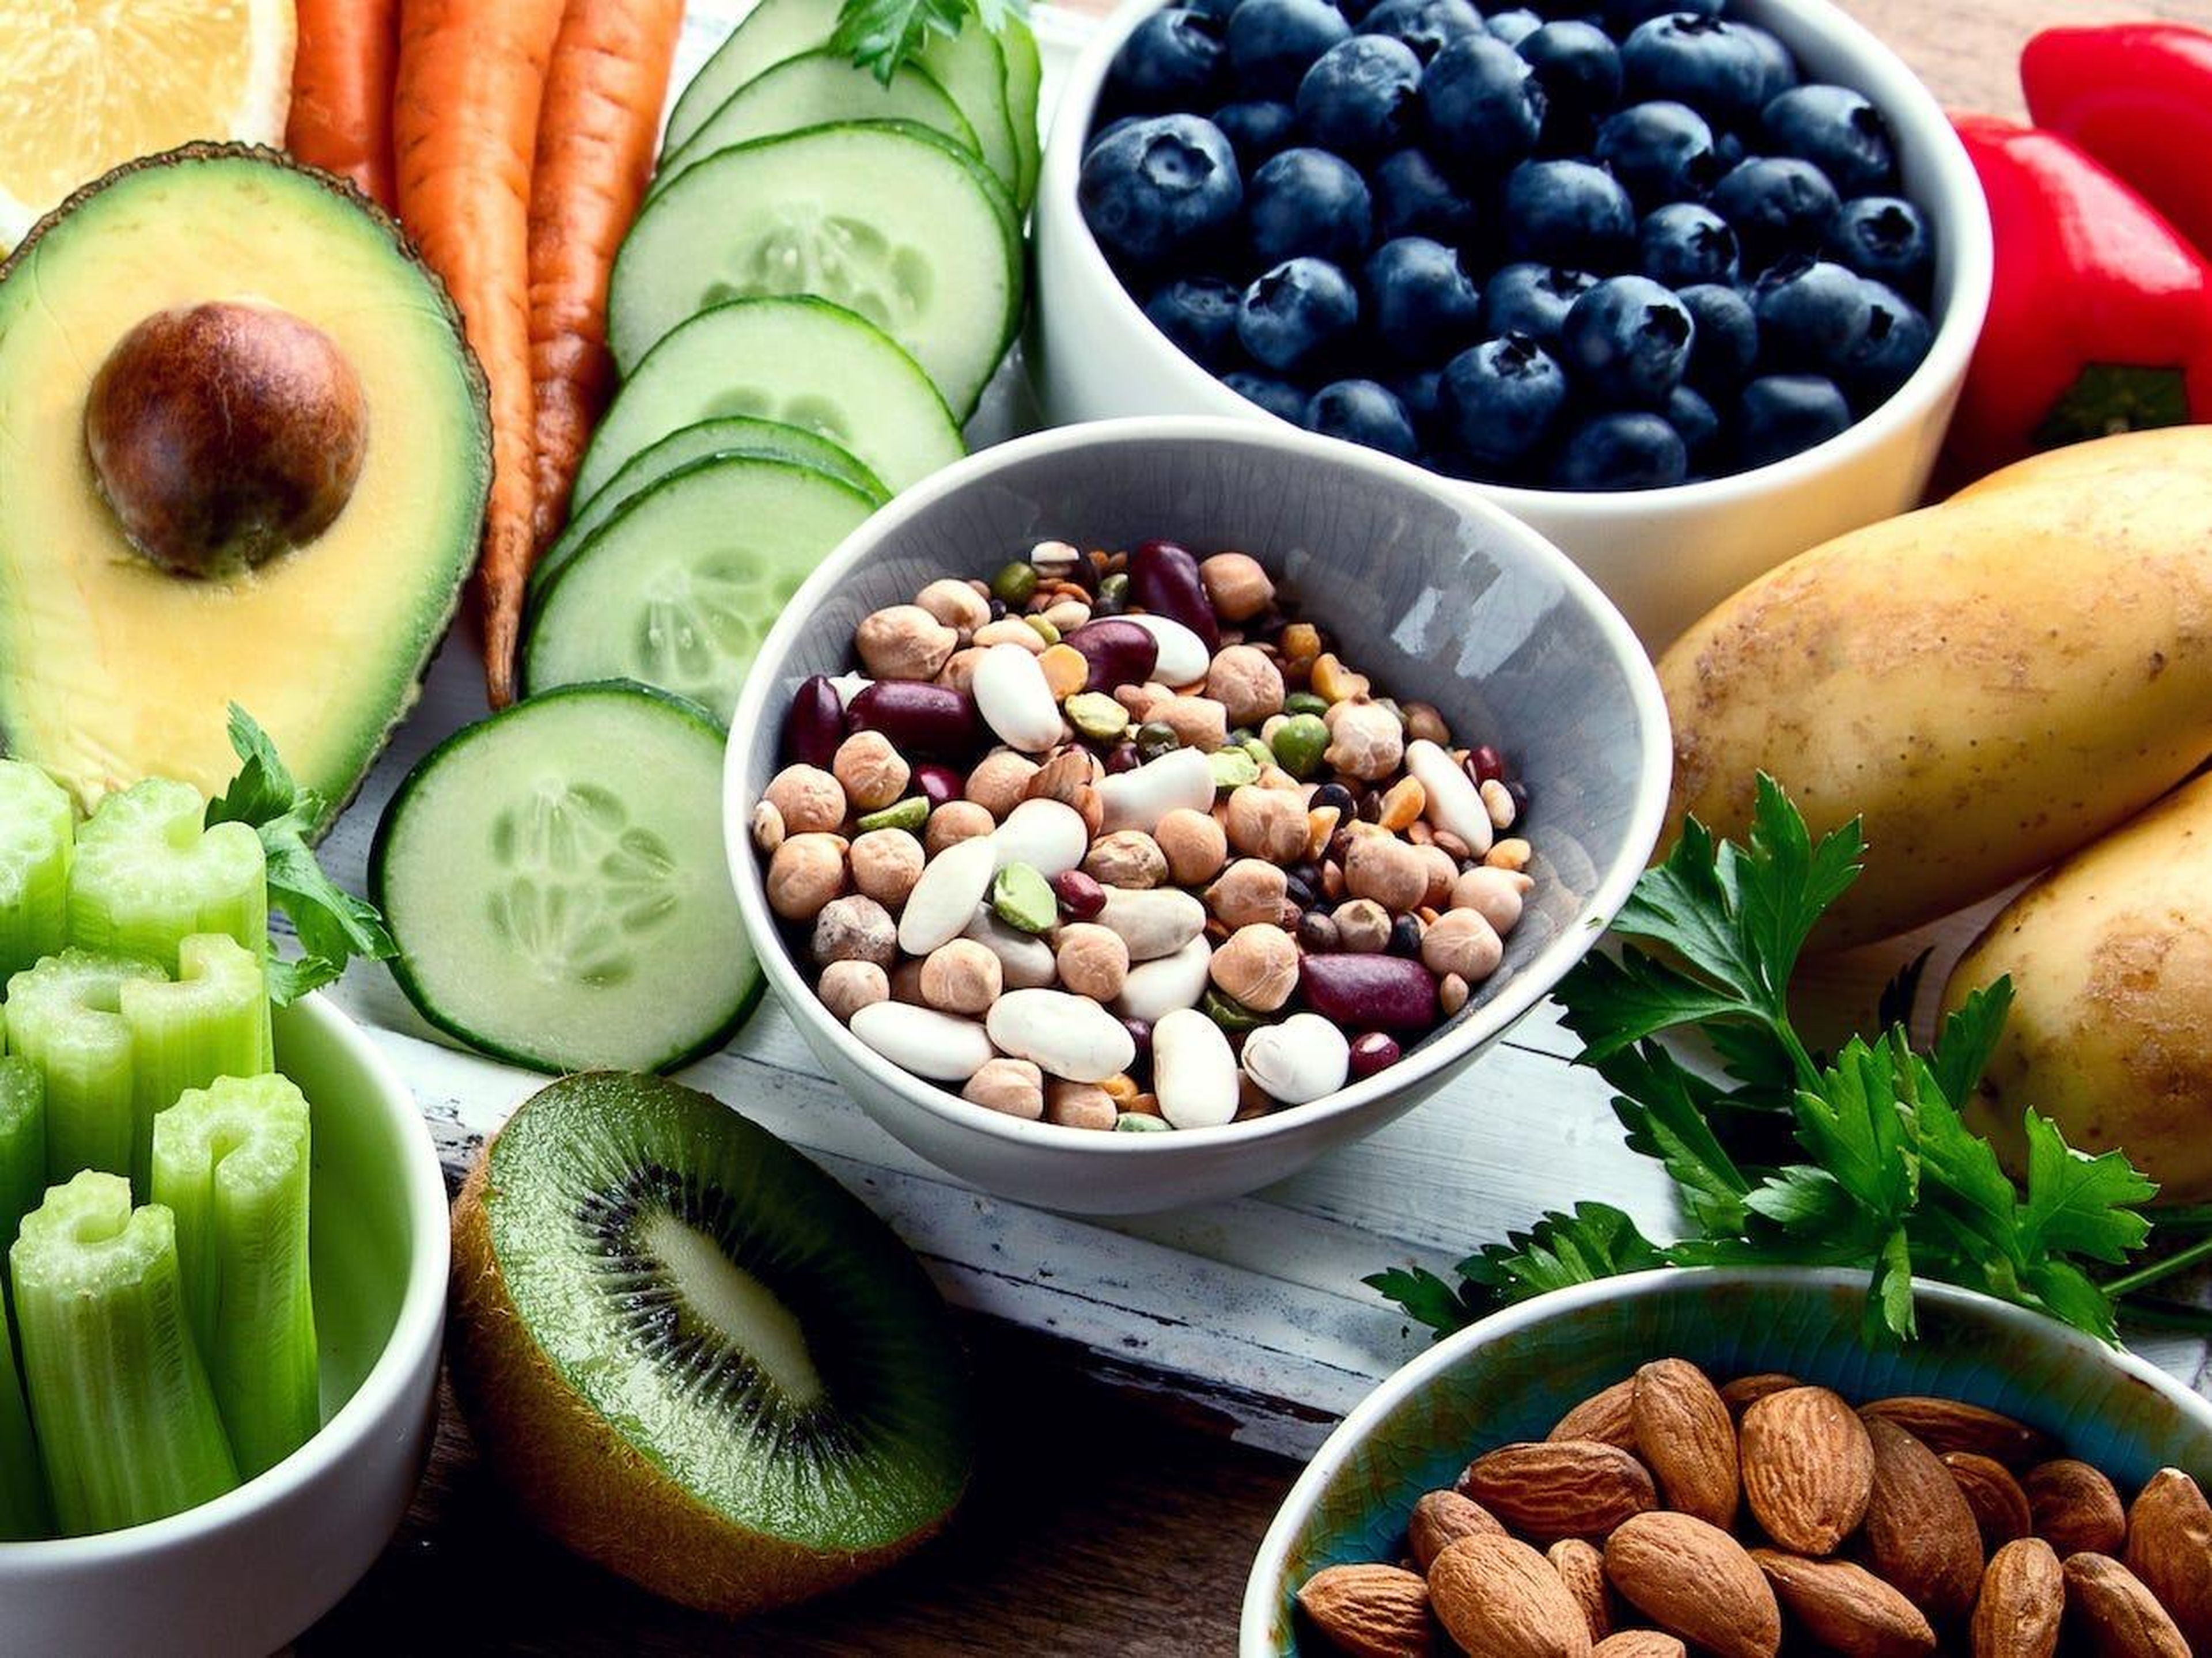 La dieta alcalina puede ser saludable, pero no debido a ningún poder especial de pH, ya que solo tiene un alto contenido de frutas, verduras y nueces.